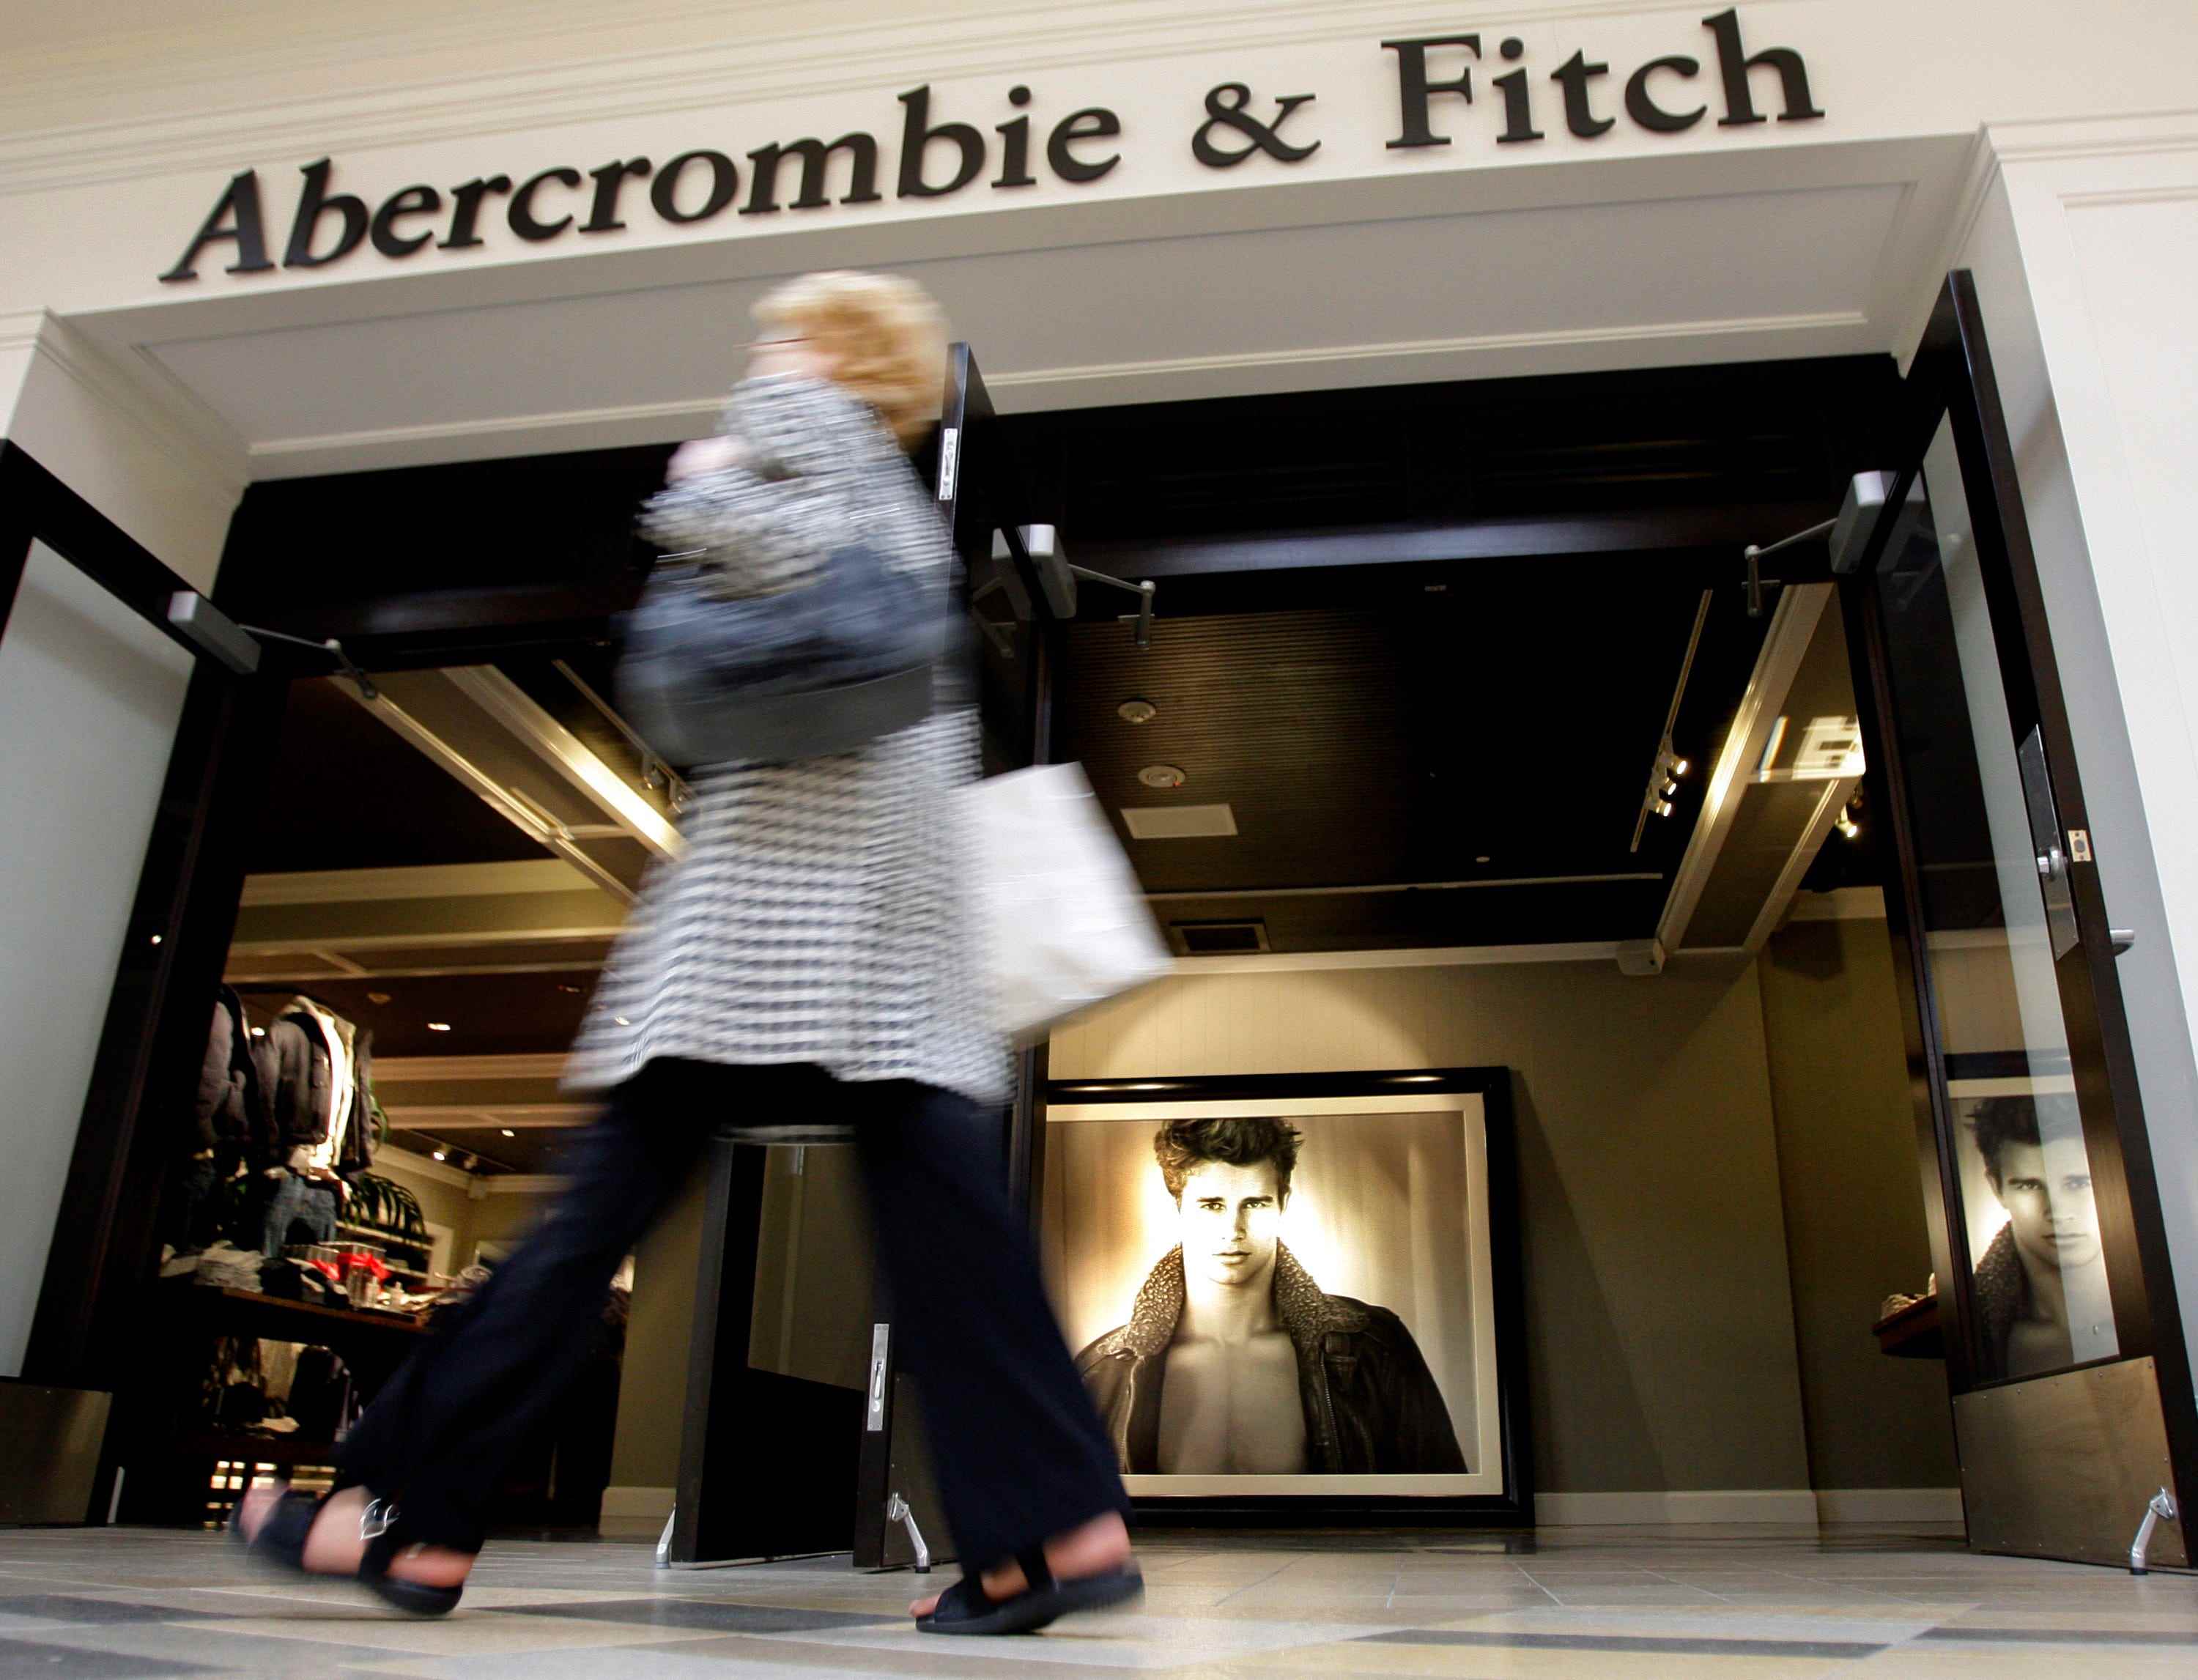 Shopper geht am Eingang zum Abercrombie & Fitch Store vorbei, auf dem das Foto des männlichen Models sichtbar ist